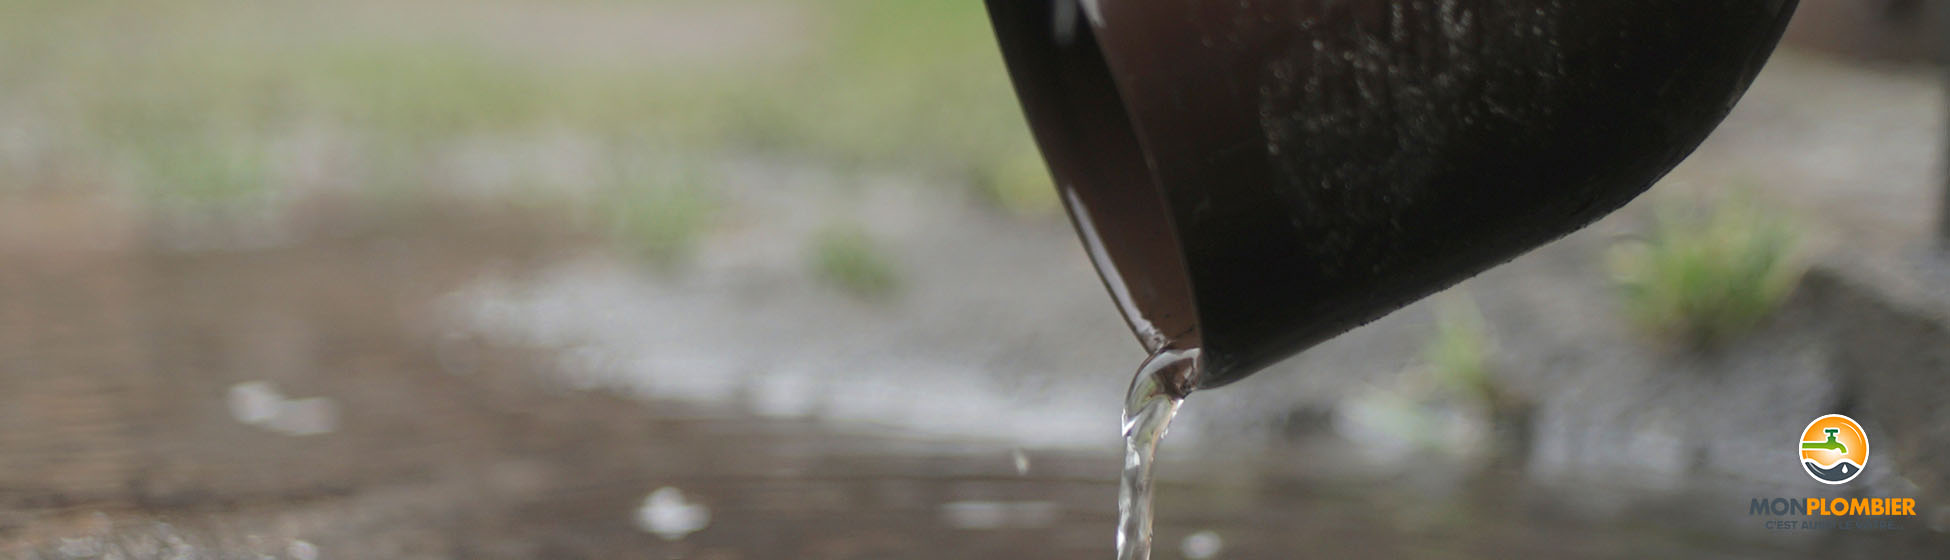 Comment installer un robinet sur un recuperateur d eau